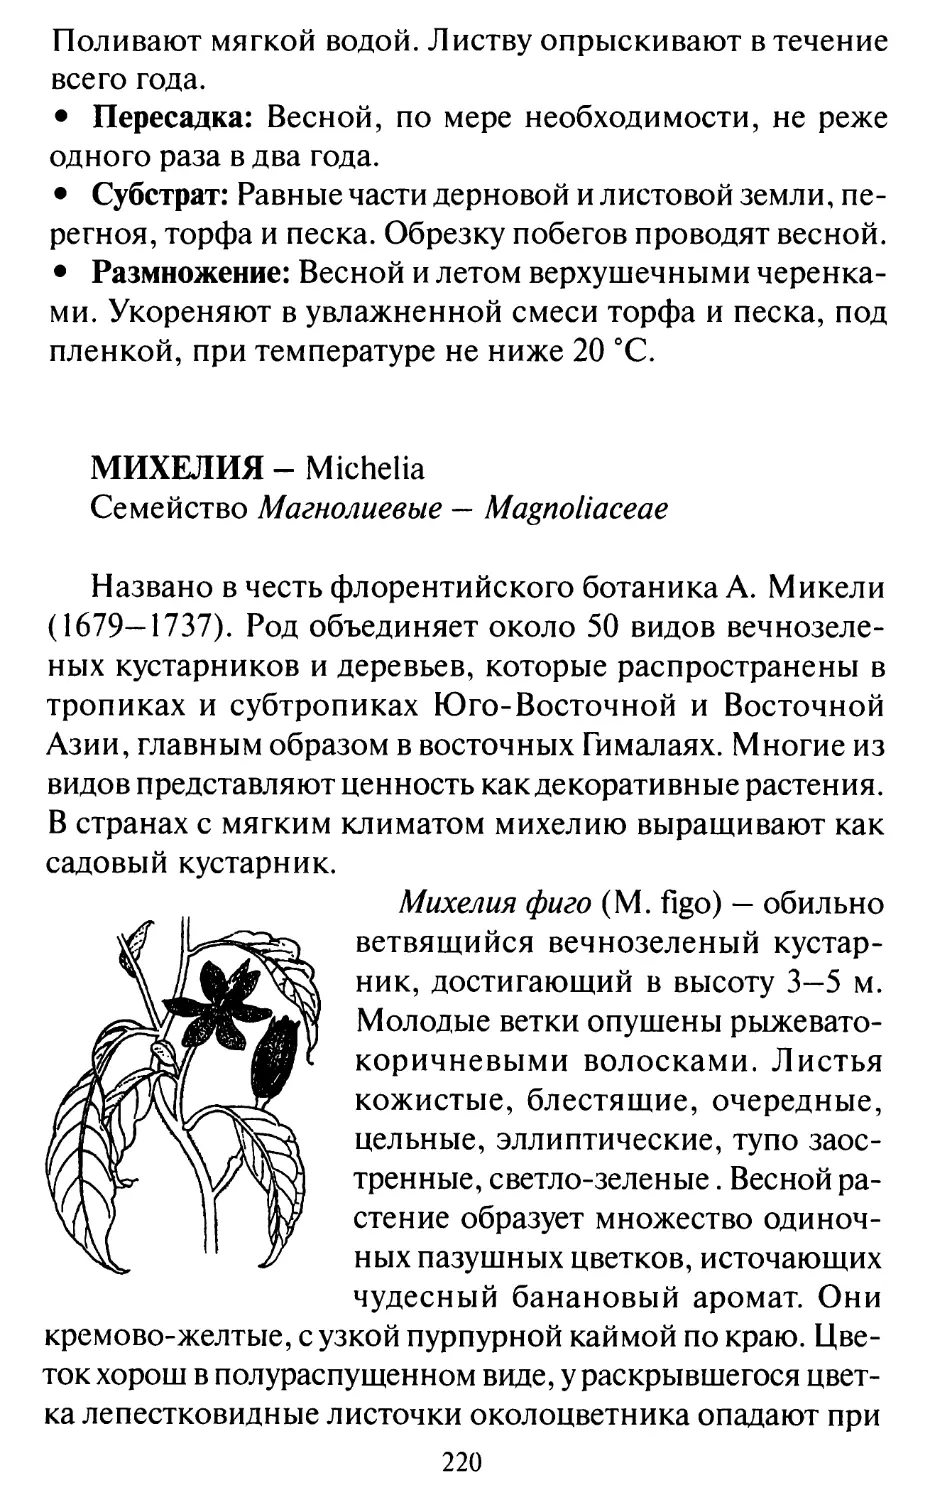 Михелия - Michelia